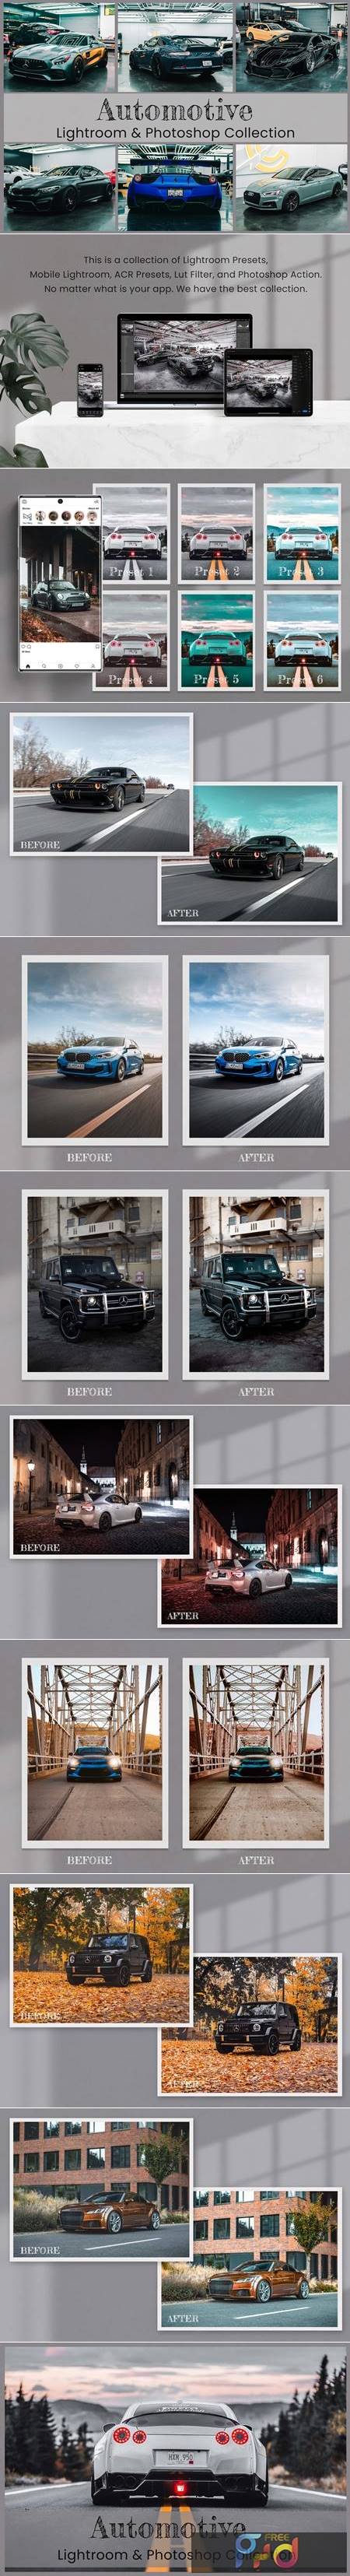 Automotive Lightroom Photoshop LUTs 6529006 1